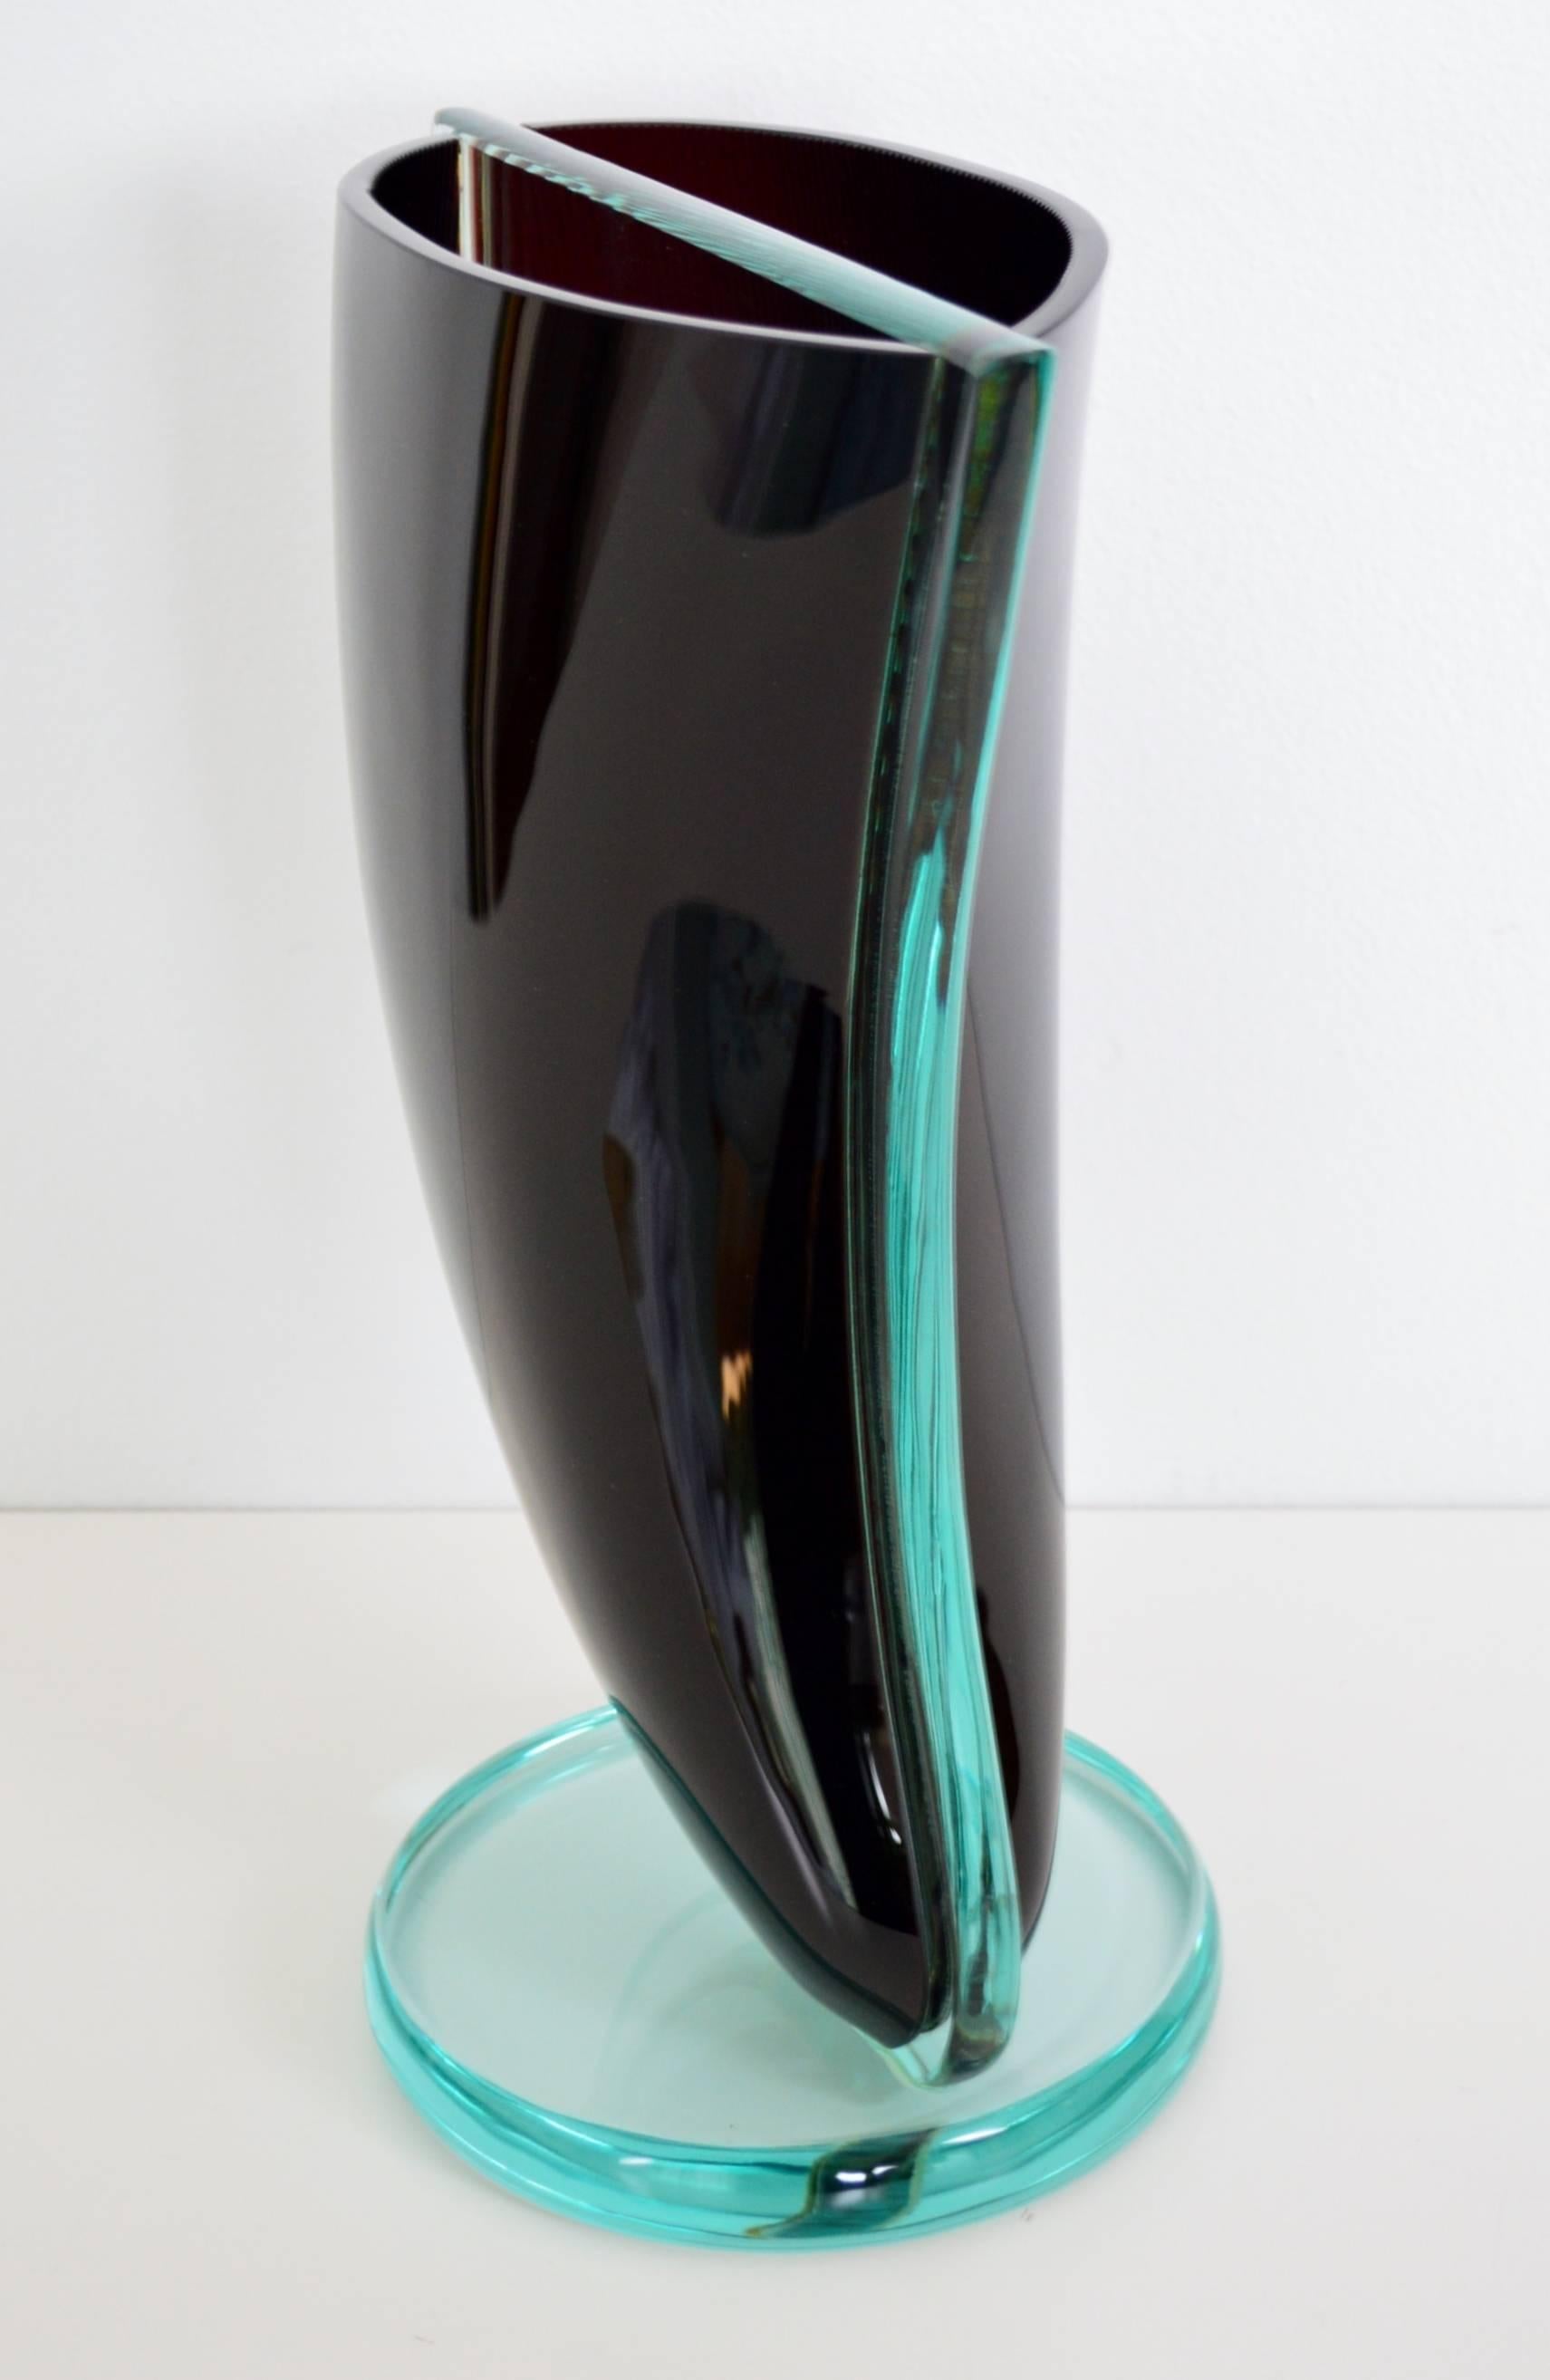 Un très grand vase de sculpture en verre, fait de verre rouge foncé et transparent. Le rouge foncé va presque dans le noir.
Attribué à Murano Glass dans les années 1960/1970.
La forme du vase semble être une voile tournée et est divisée au milieu